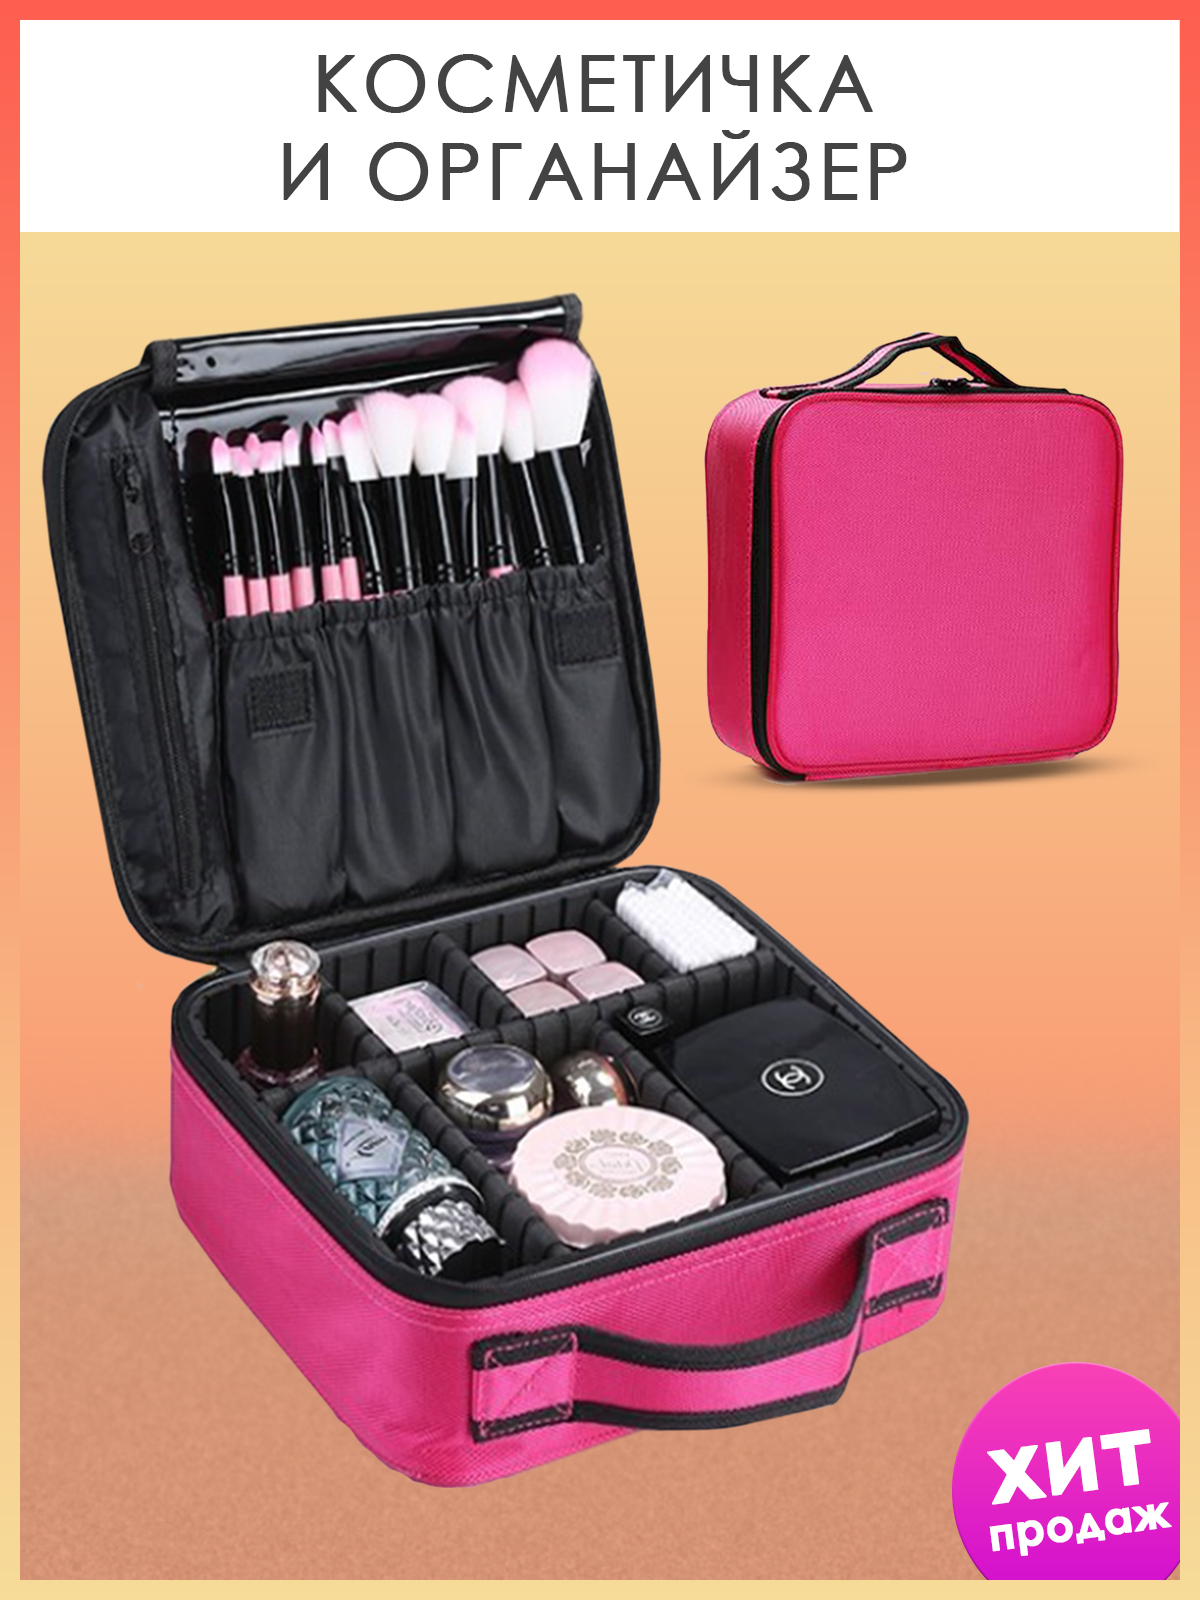 косметичка женская дорожная большая  чемодан для косметики  для путешествий  мужская  бьюти кейс  для девочек  органайзер дорожный